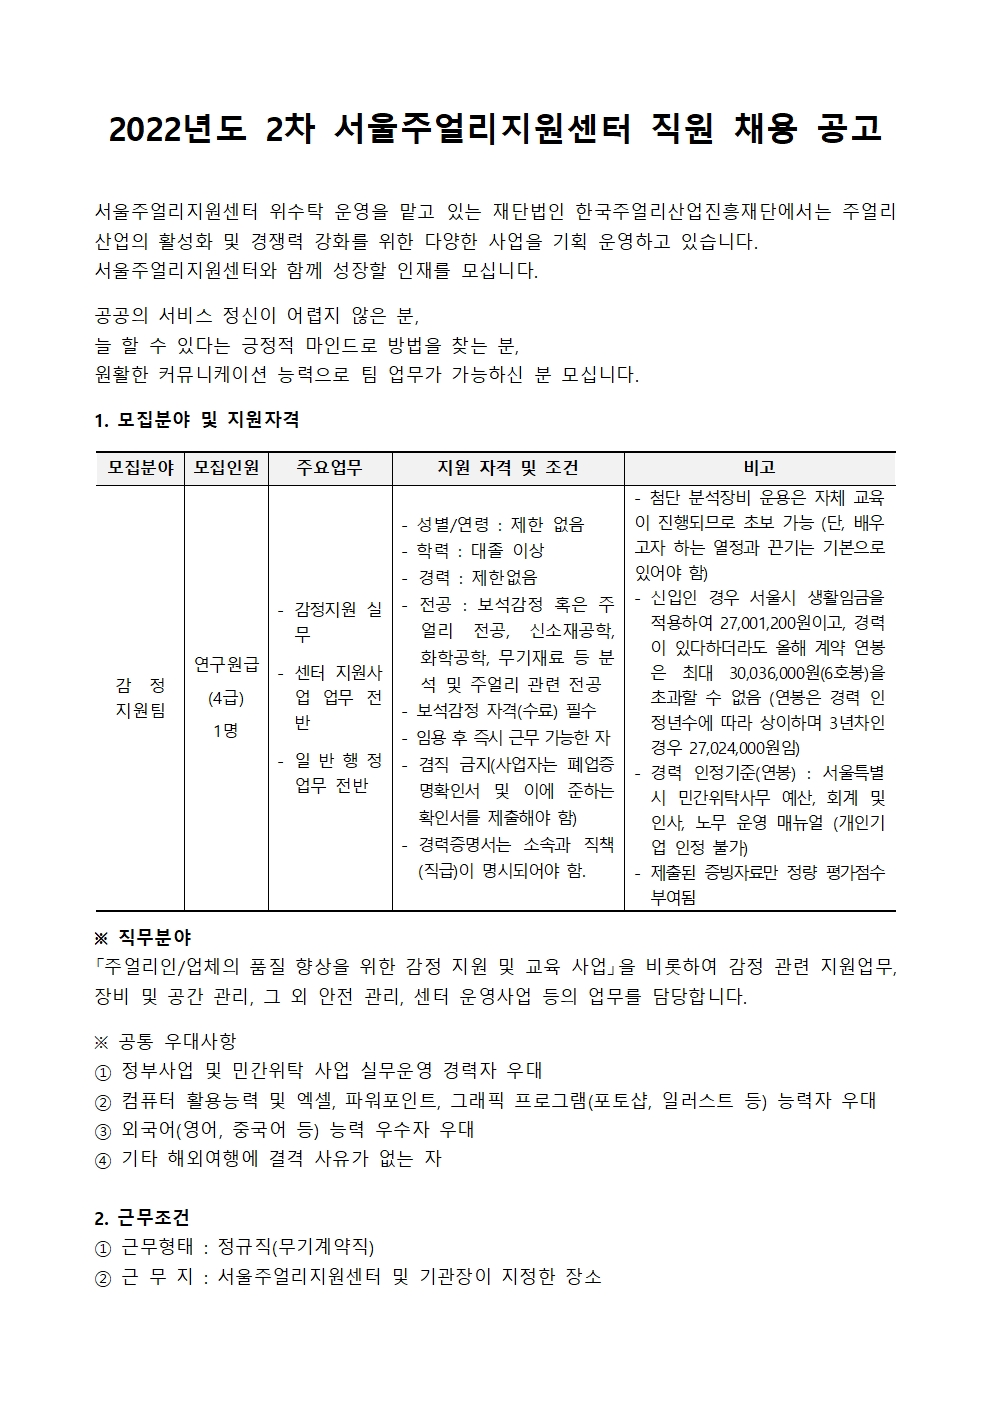 [채용공고] 2022년도 제2차 서울주얼리지원센터 정규직 채용 공고